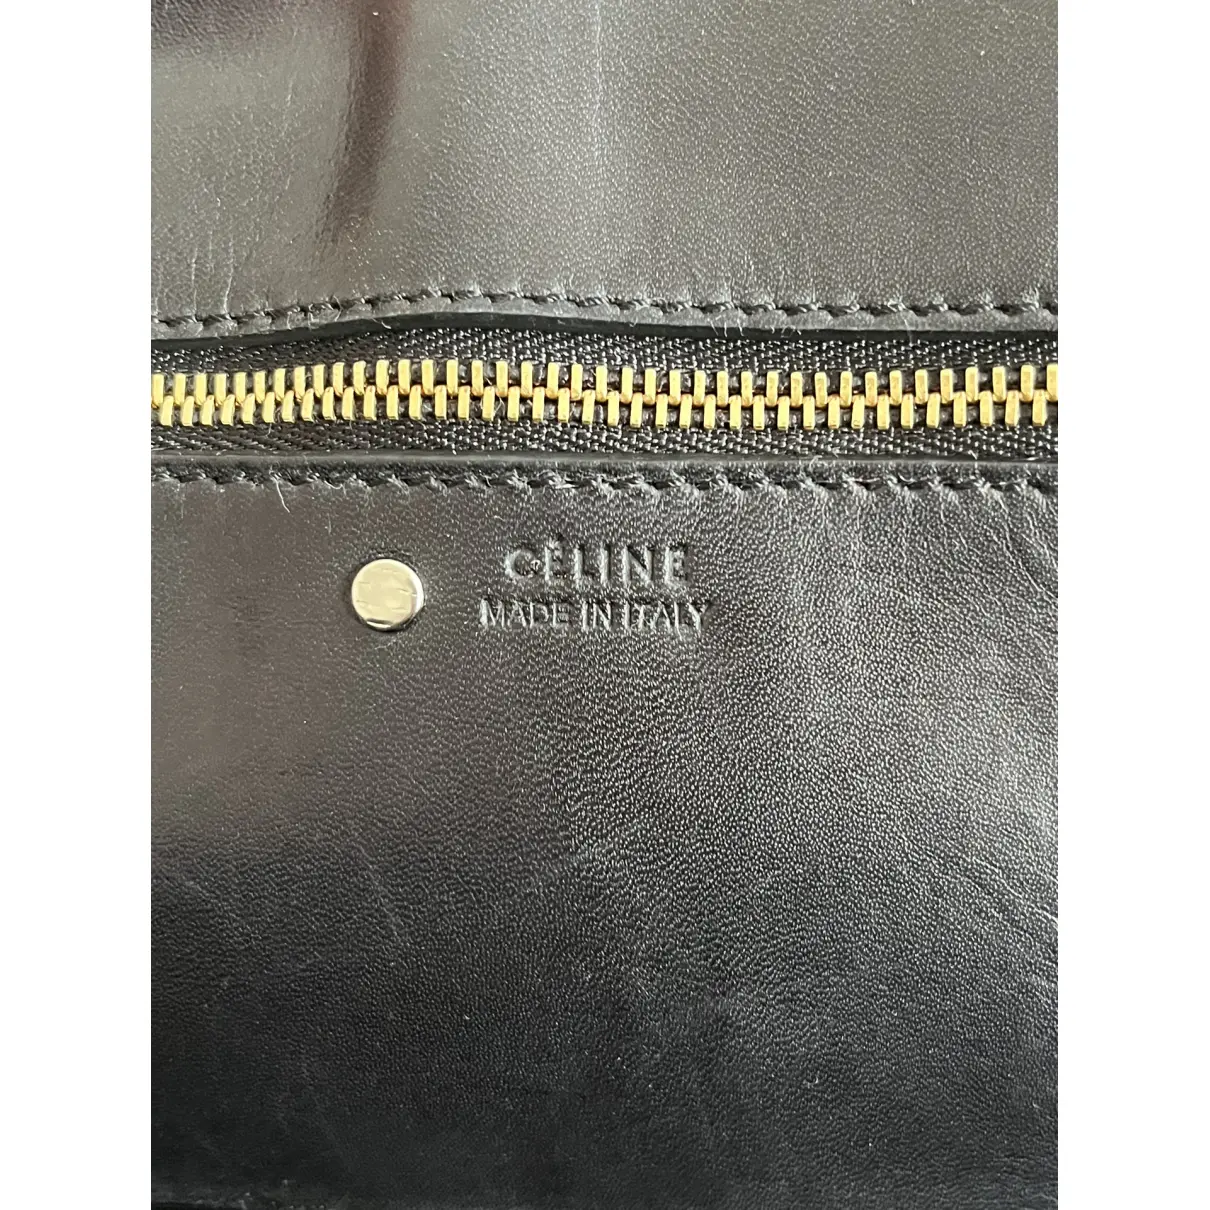 Buy Celine Tie leather handbag online